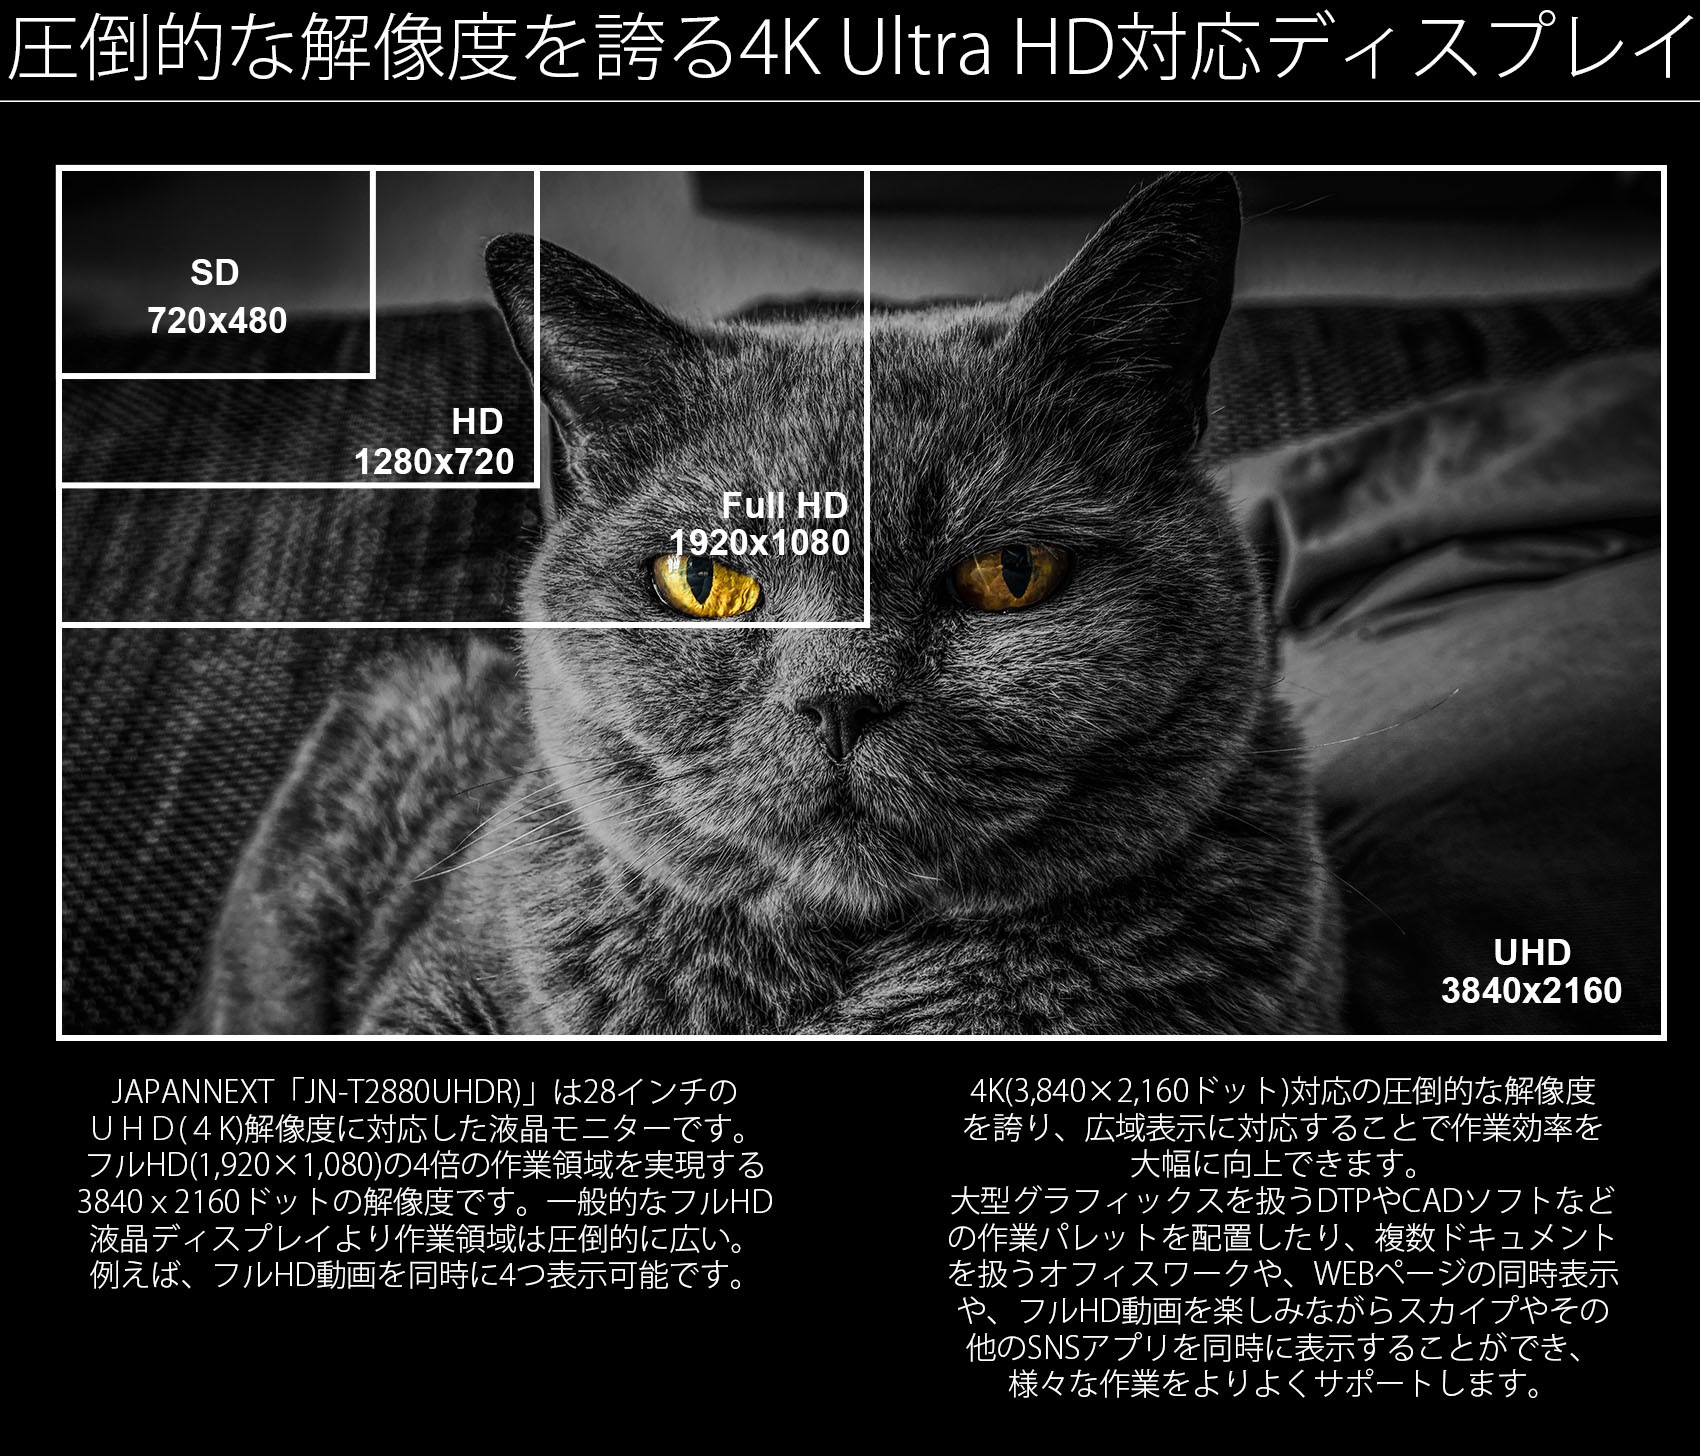 JAPANNEXT「JN-IPS320CUHDR」は32インチのUHD（4K）解像度に対応した液晶ディスプレイです。フルHD（1920×1080）の4倍の作業領域を実現する3840ｘ2160ドットの解像度です。一般的なフルHD液晶ディスプレイより作業領域は圧倒的に広い。例えば、フルHD動画を同時に4つ表示可能です。4K（3840×2160ドット）対応の圧倒的な解像度を誇り、広域表示に対応することで作業効率を大幅に向上できます。大型グラフィックスを扱うDTPやCADソフトなどの作業パレットを配置したり、複数ドキュメントを扱うオフィスワークや、WEBページの同時表示や、フルHD動画を楽しみながらスカイプやその他のSNSアプリを同時に表示することができ、様々な作業をよりよくサポートします。